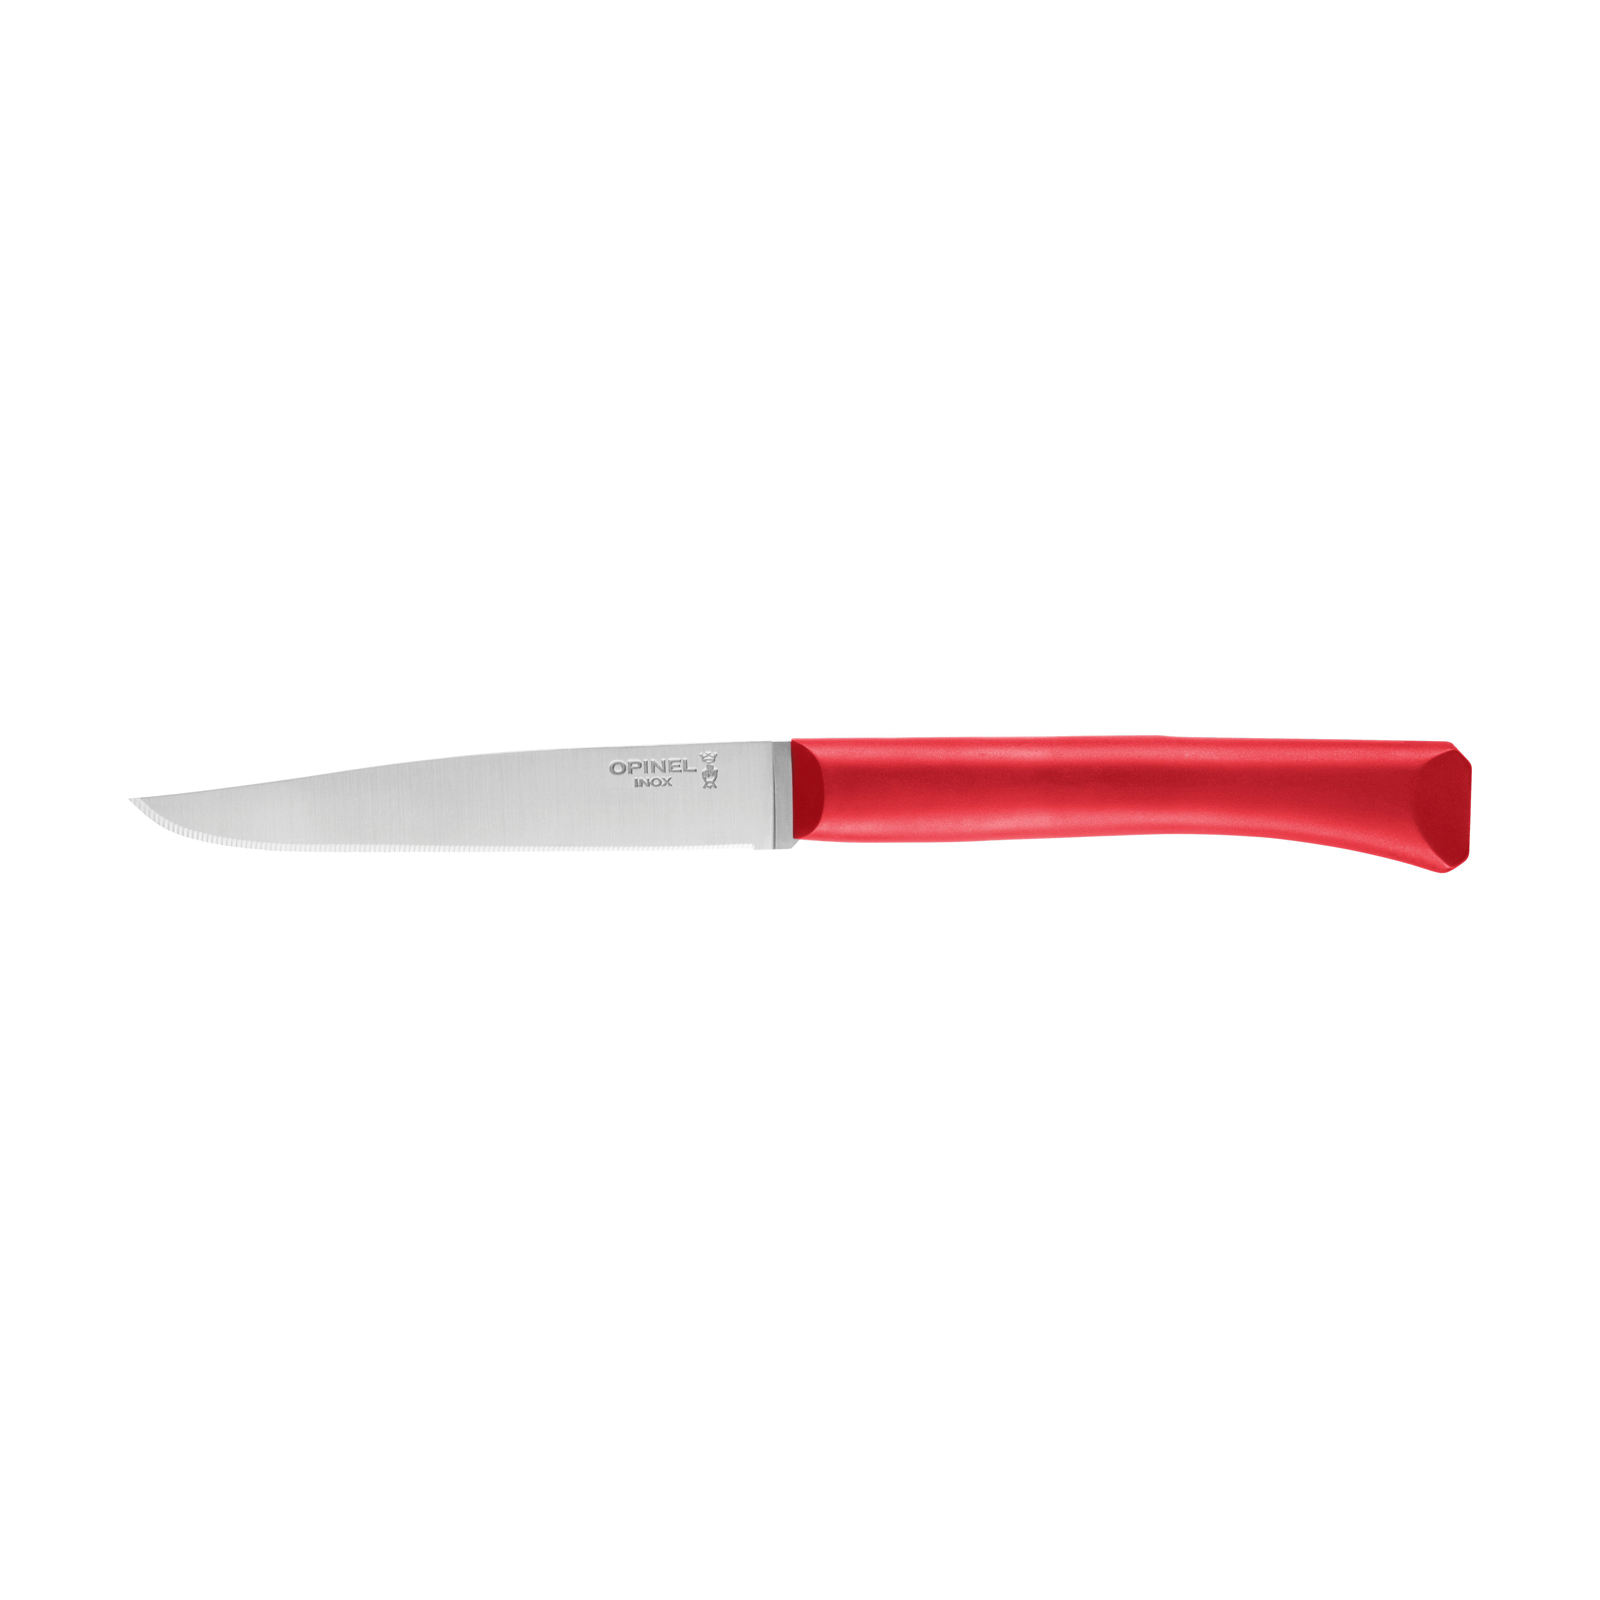 Кухонный нож Opinel Bon Appetit Plus 11 см Red (001906)